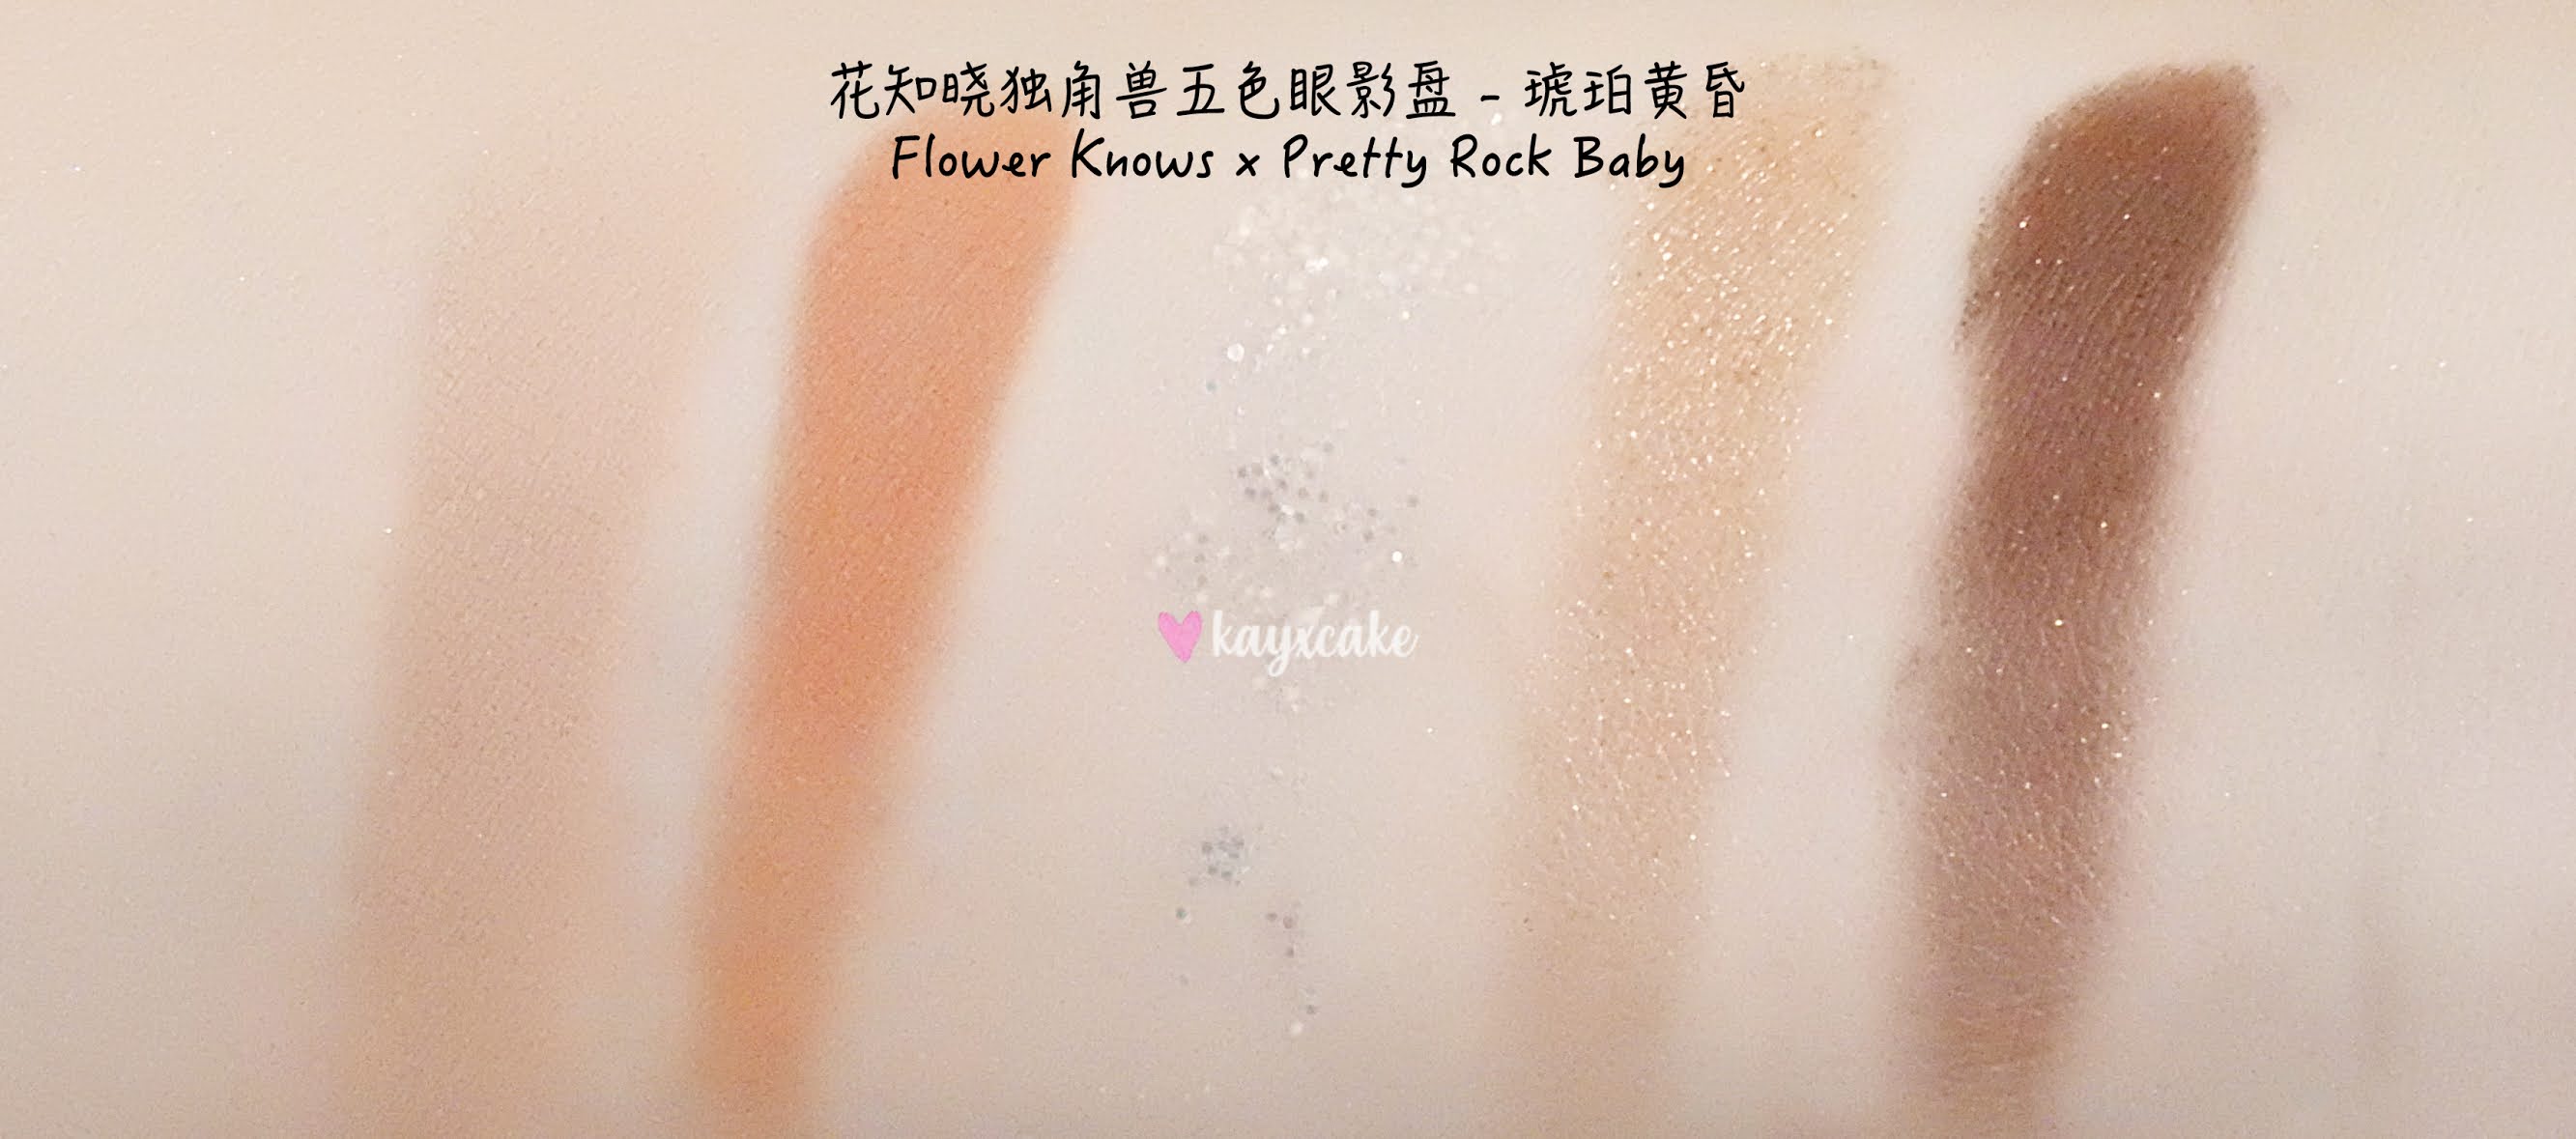 Kay Cake Beauty: Flower Knows x Pretty Rock Baby Unicorn